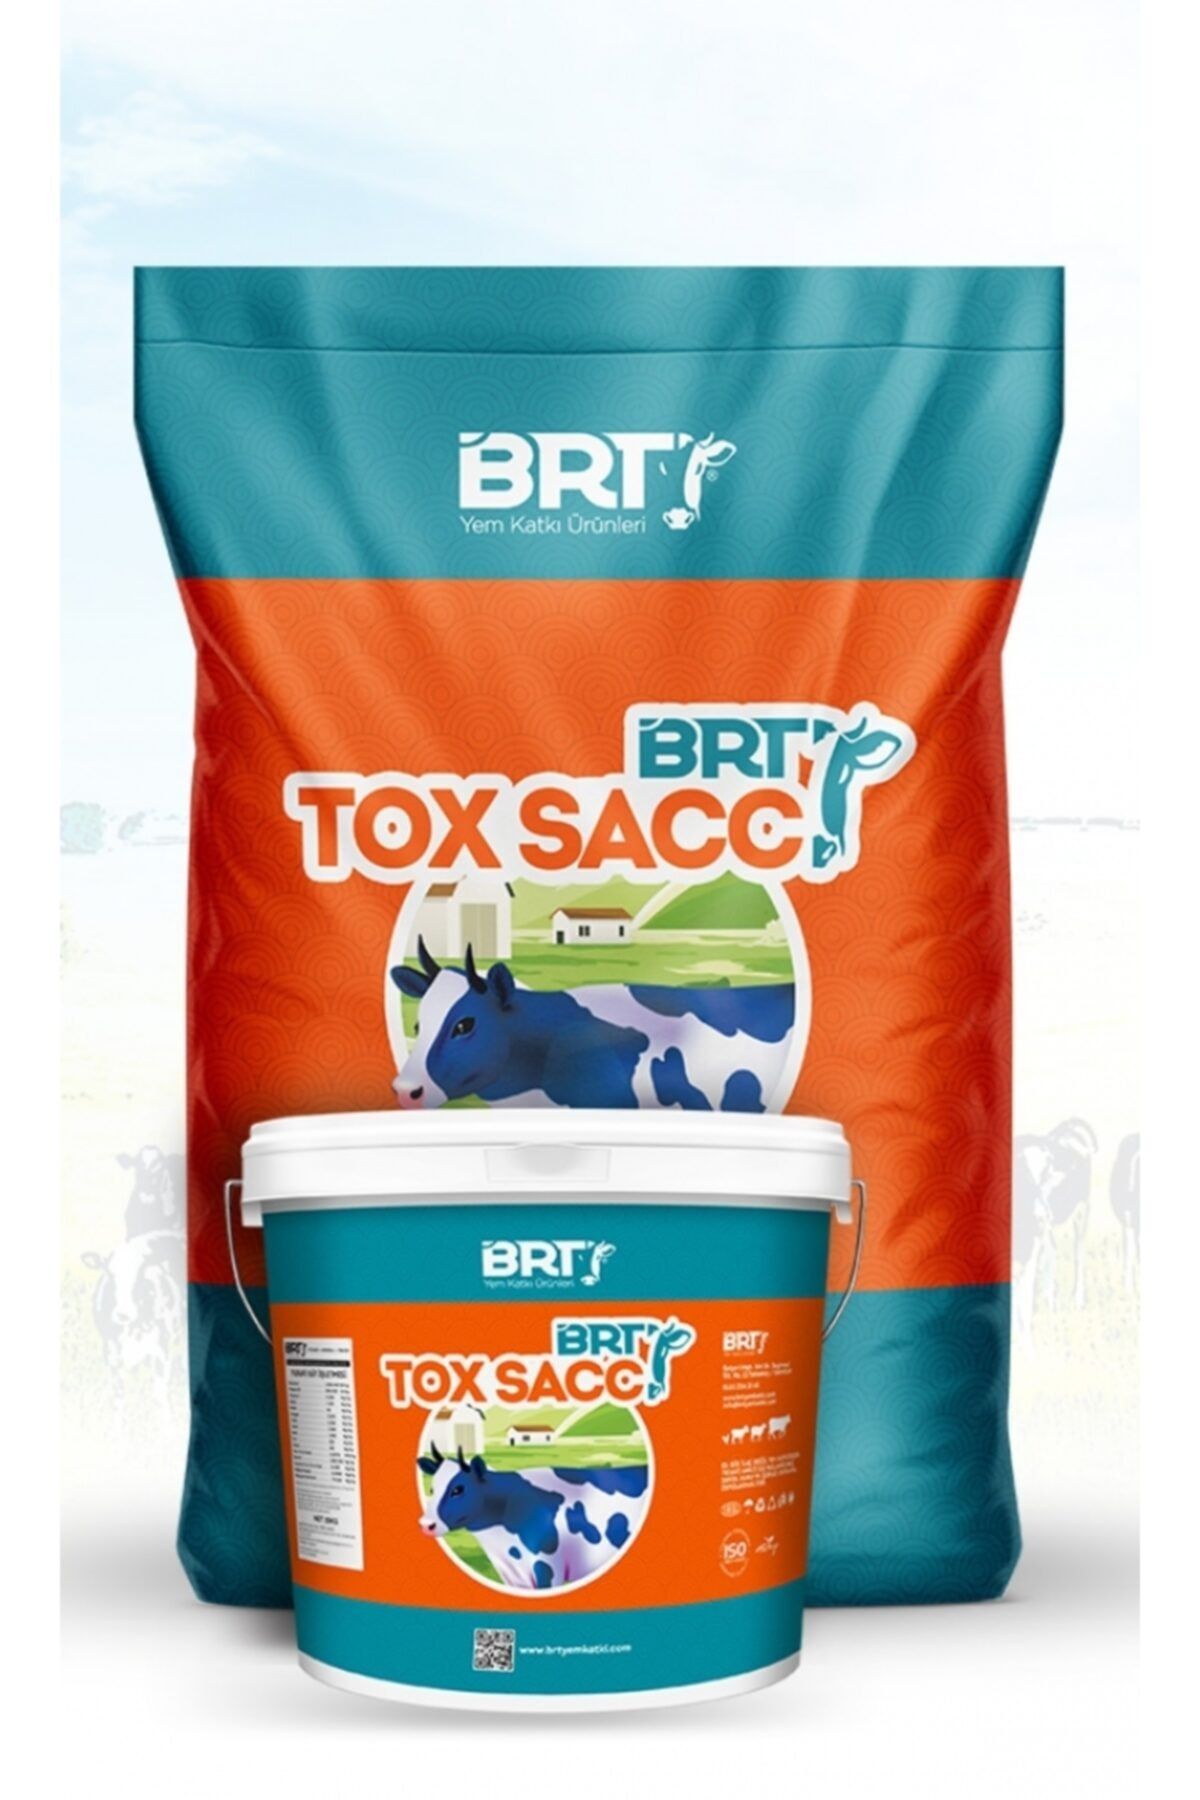 BRT FAMILY Brt Tox Sacc Hayvan Yem Katkısı Vitamin Mineral Toksin Bağlayıcı 5kg